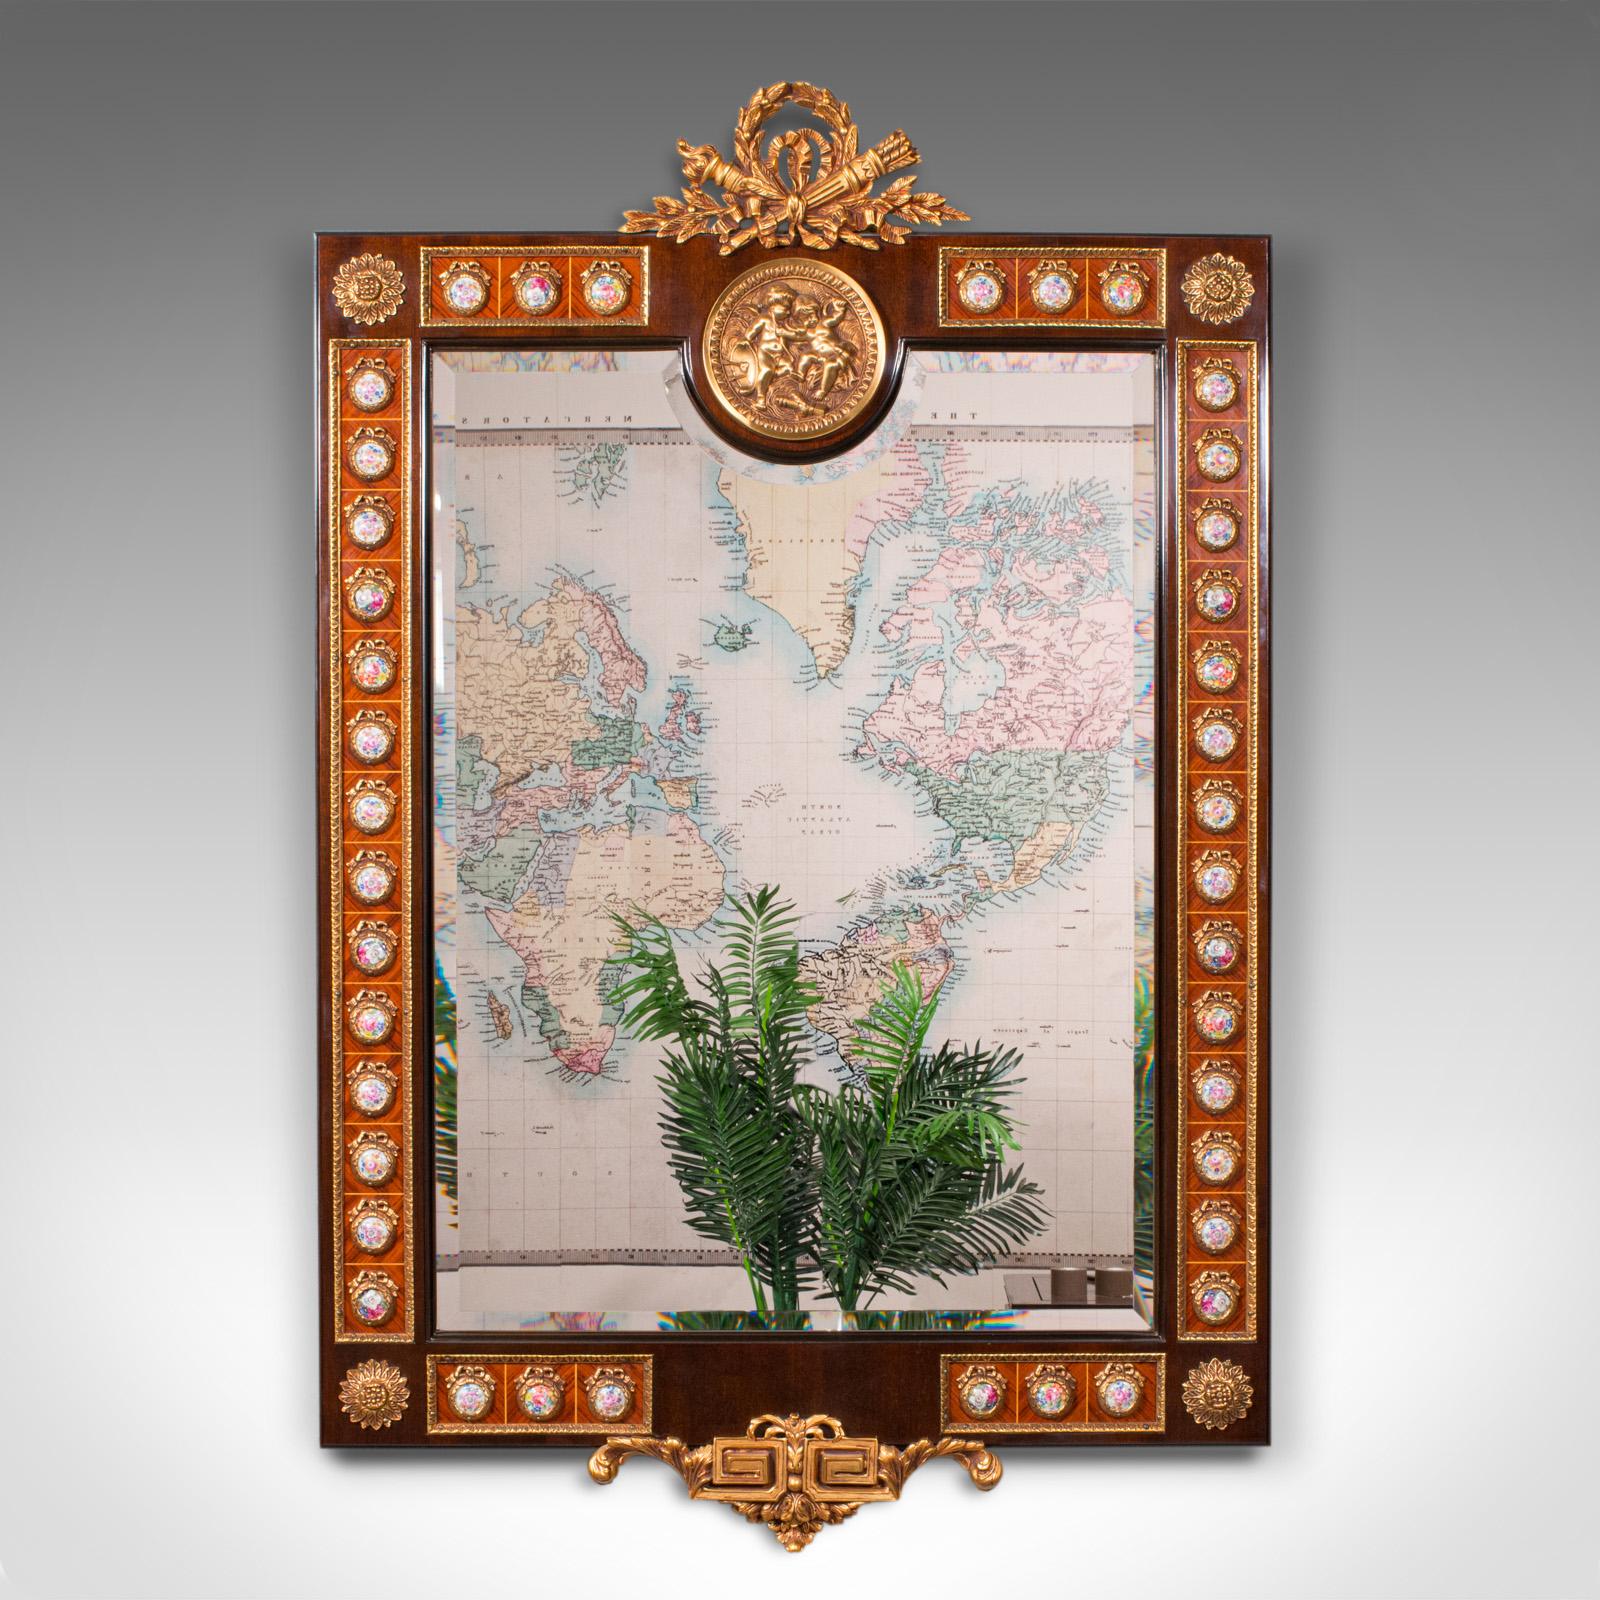 Dies ist ein großer dekorativer Vintage-Spiegel von hervorragender Qualität. Ein kontinentaler Spiegel aus Nussbaumholz im italienischen Stil, aus dem späten 20. Jahrhundert, um 1970.

Unglaublich verschnörkelter Spiegel, mit hervorragender